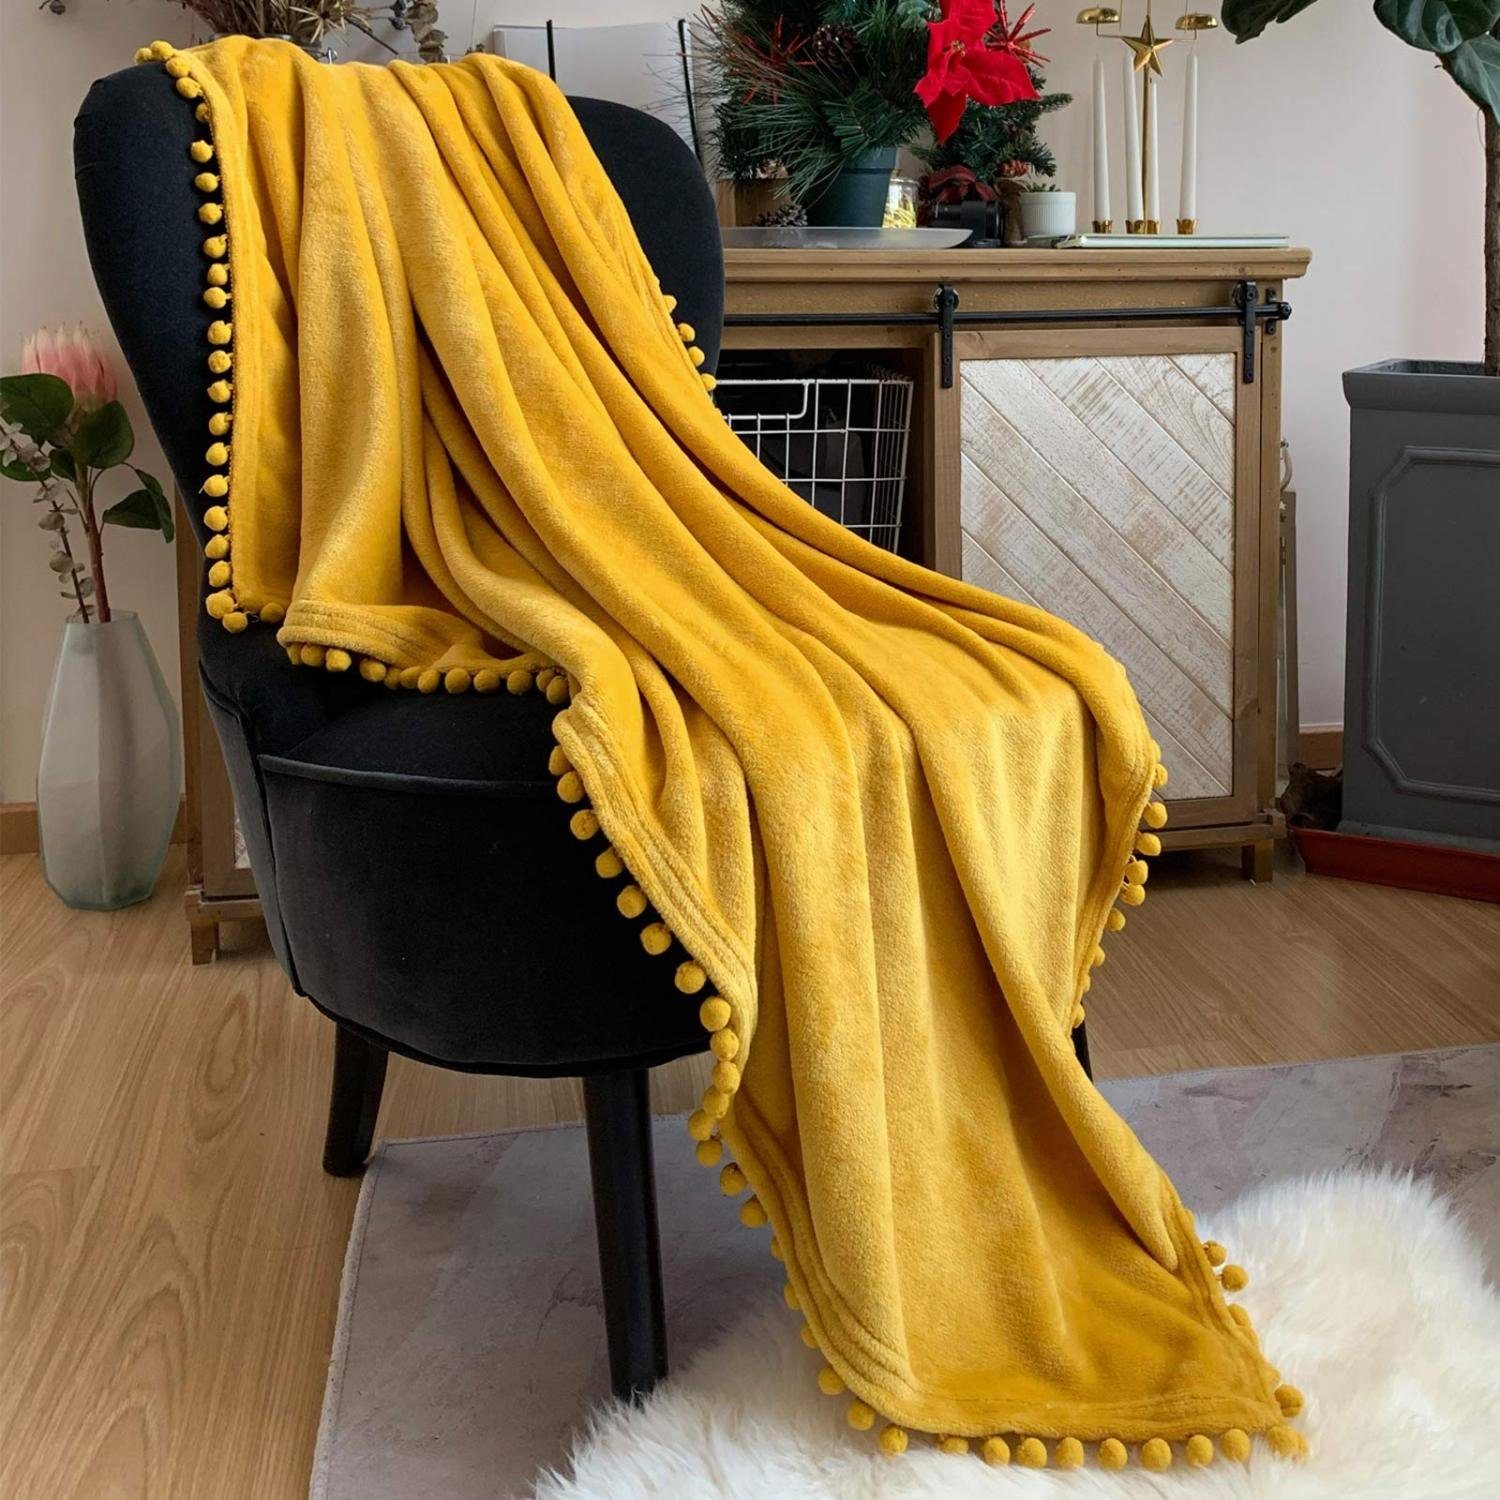 Decke,für Wohndecke Jormftte Wohndecke Bett Weich Stuhl,Gelb, Strickdecke,Quaste Boho Sofa